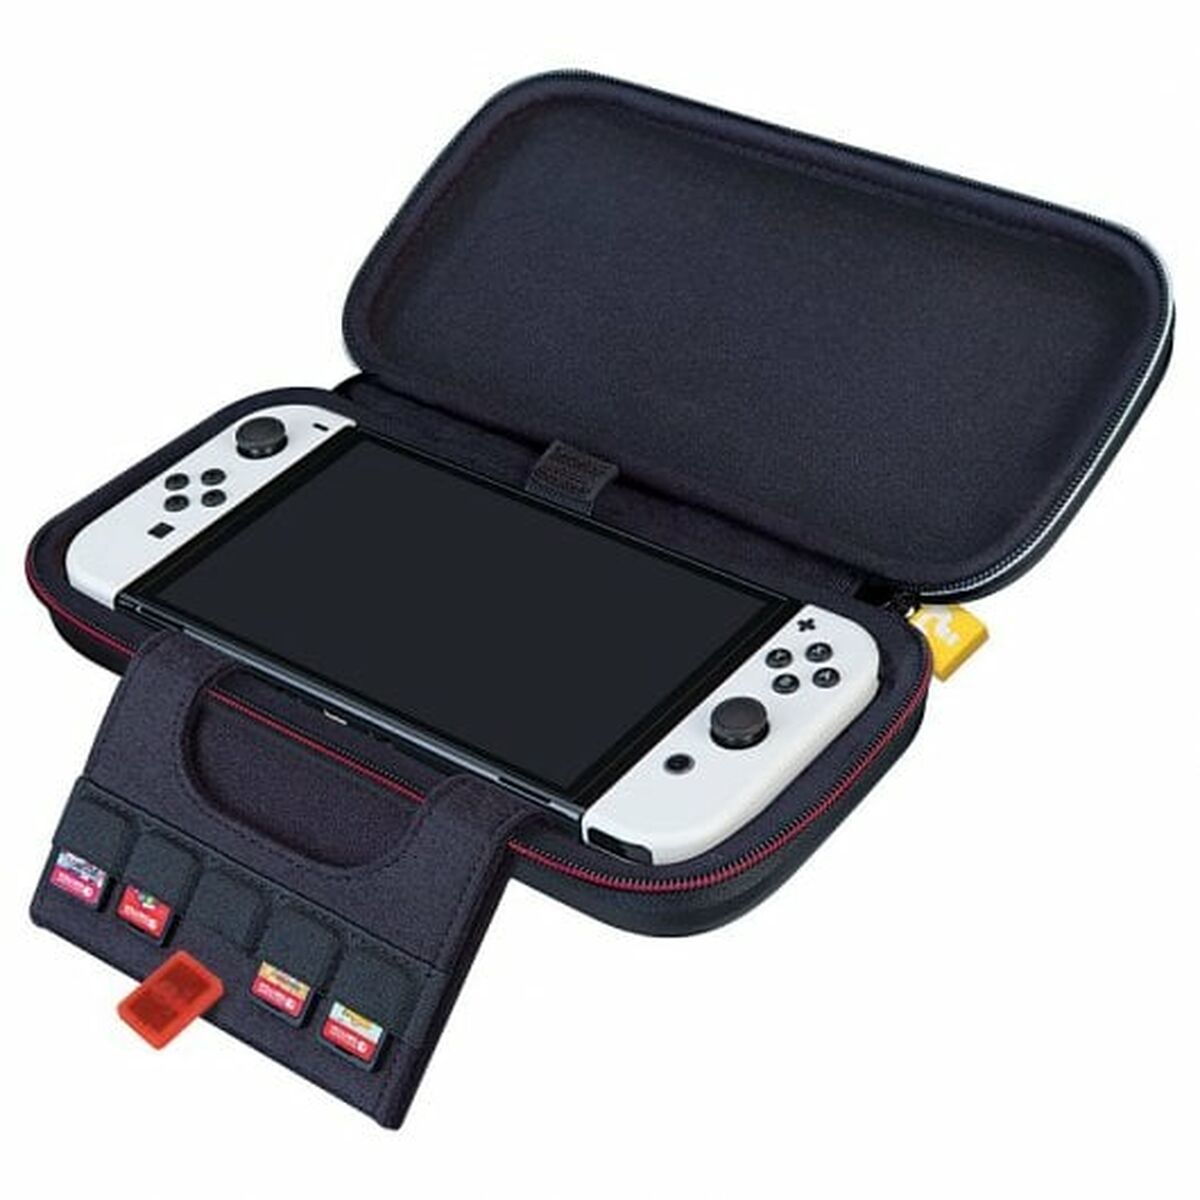 Etui für Nintendo Switch Ardistel Nns533 Schwarz